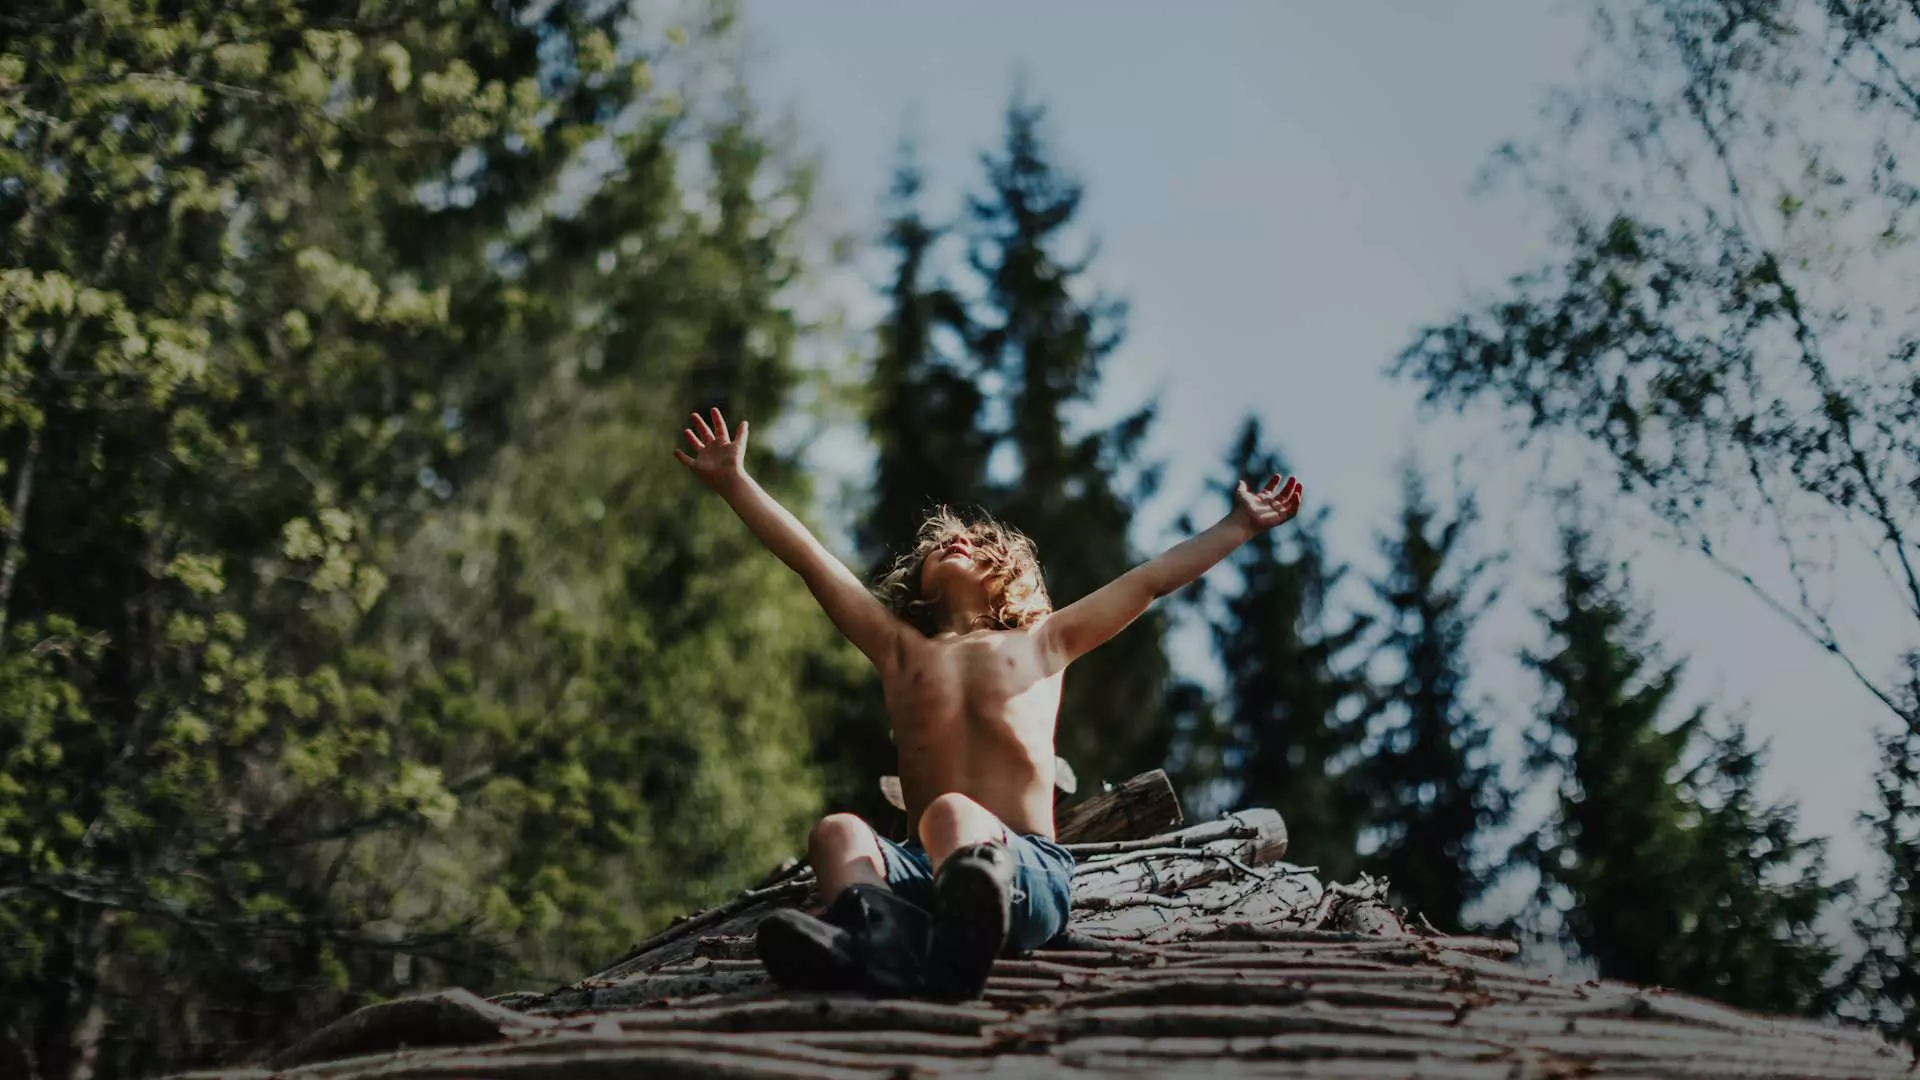 En gutt sitter på taket av en hytte i skogen med armene strukket ut. Bildet gir en følelse av frihet og glede.